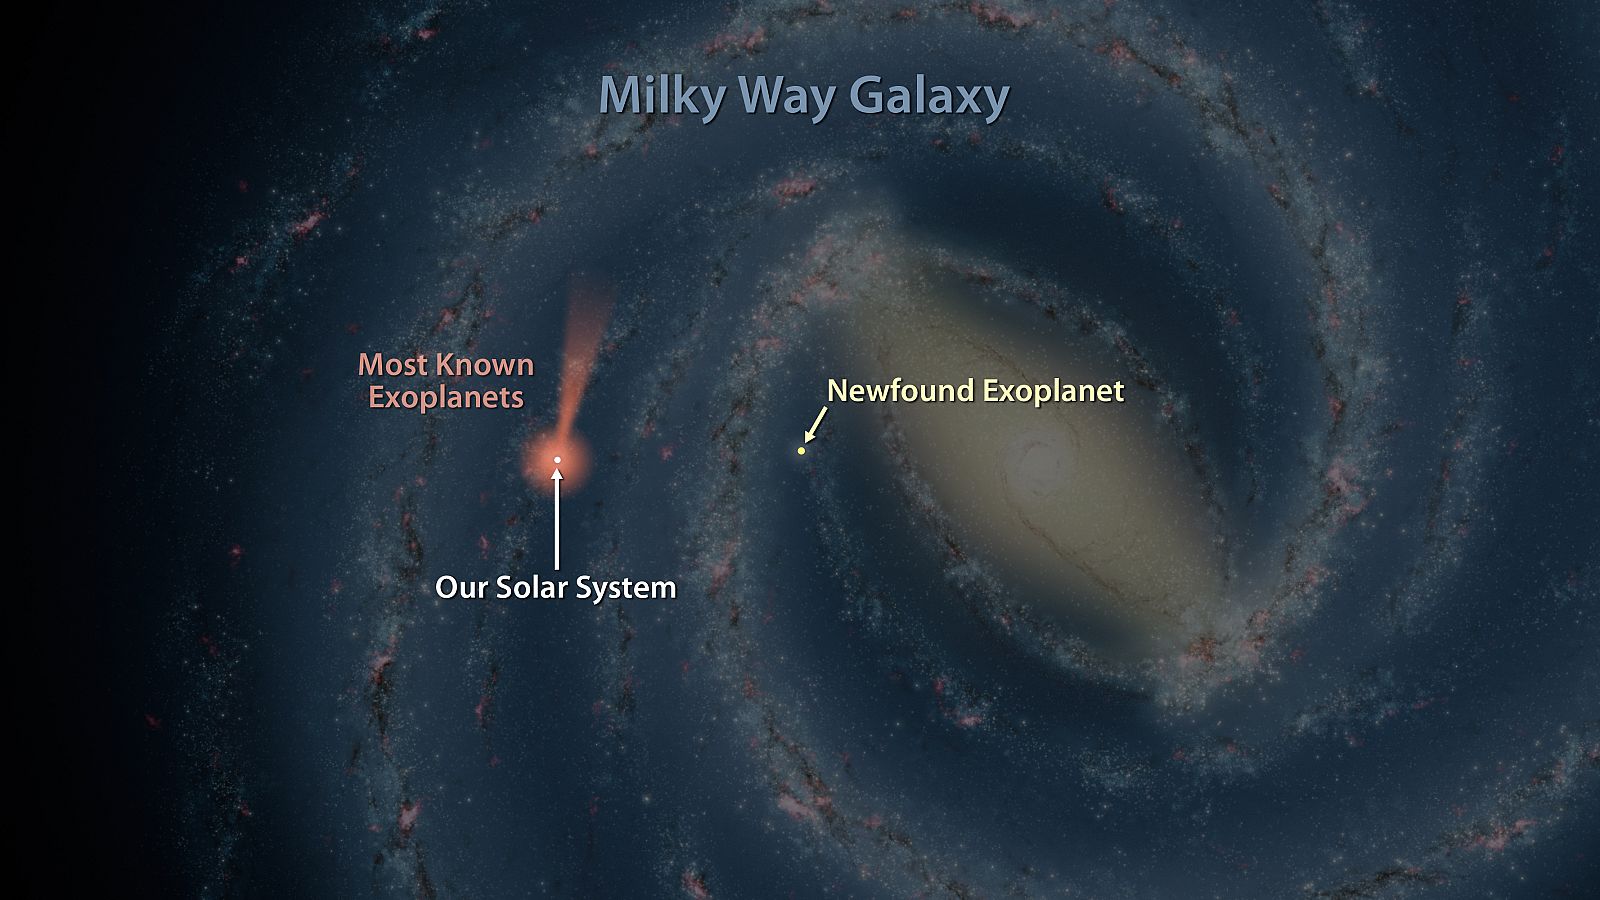 Imagen captada por el telescopio espacial Spitzer con la posición del nuevo planeta encontrado respecto a nuestro Sistema Solar.